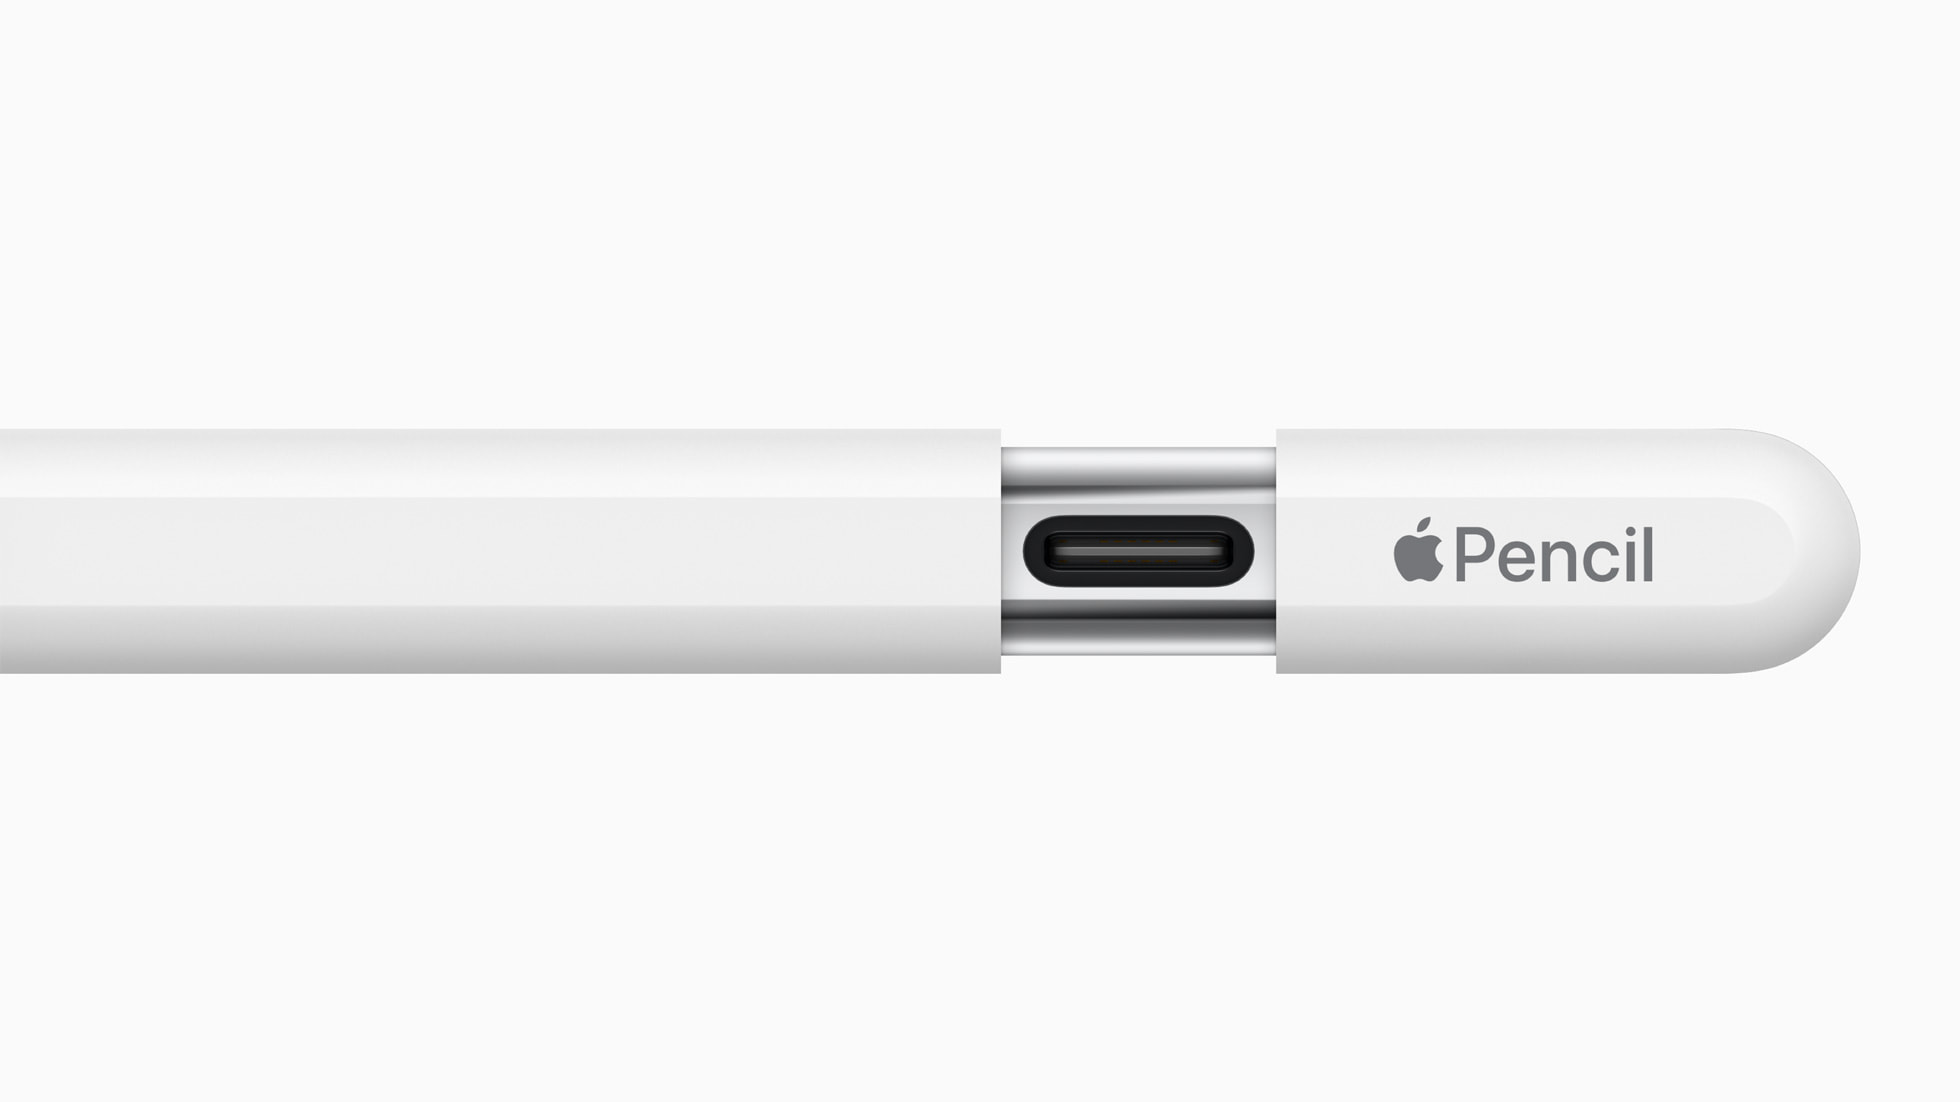 Apple Pencil đã có phiên bản USB Type-C: Vì một tương lai chỉ một dây sạc - Ảnh 2.